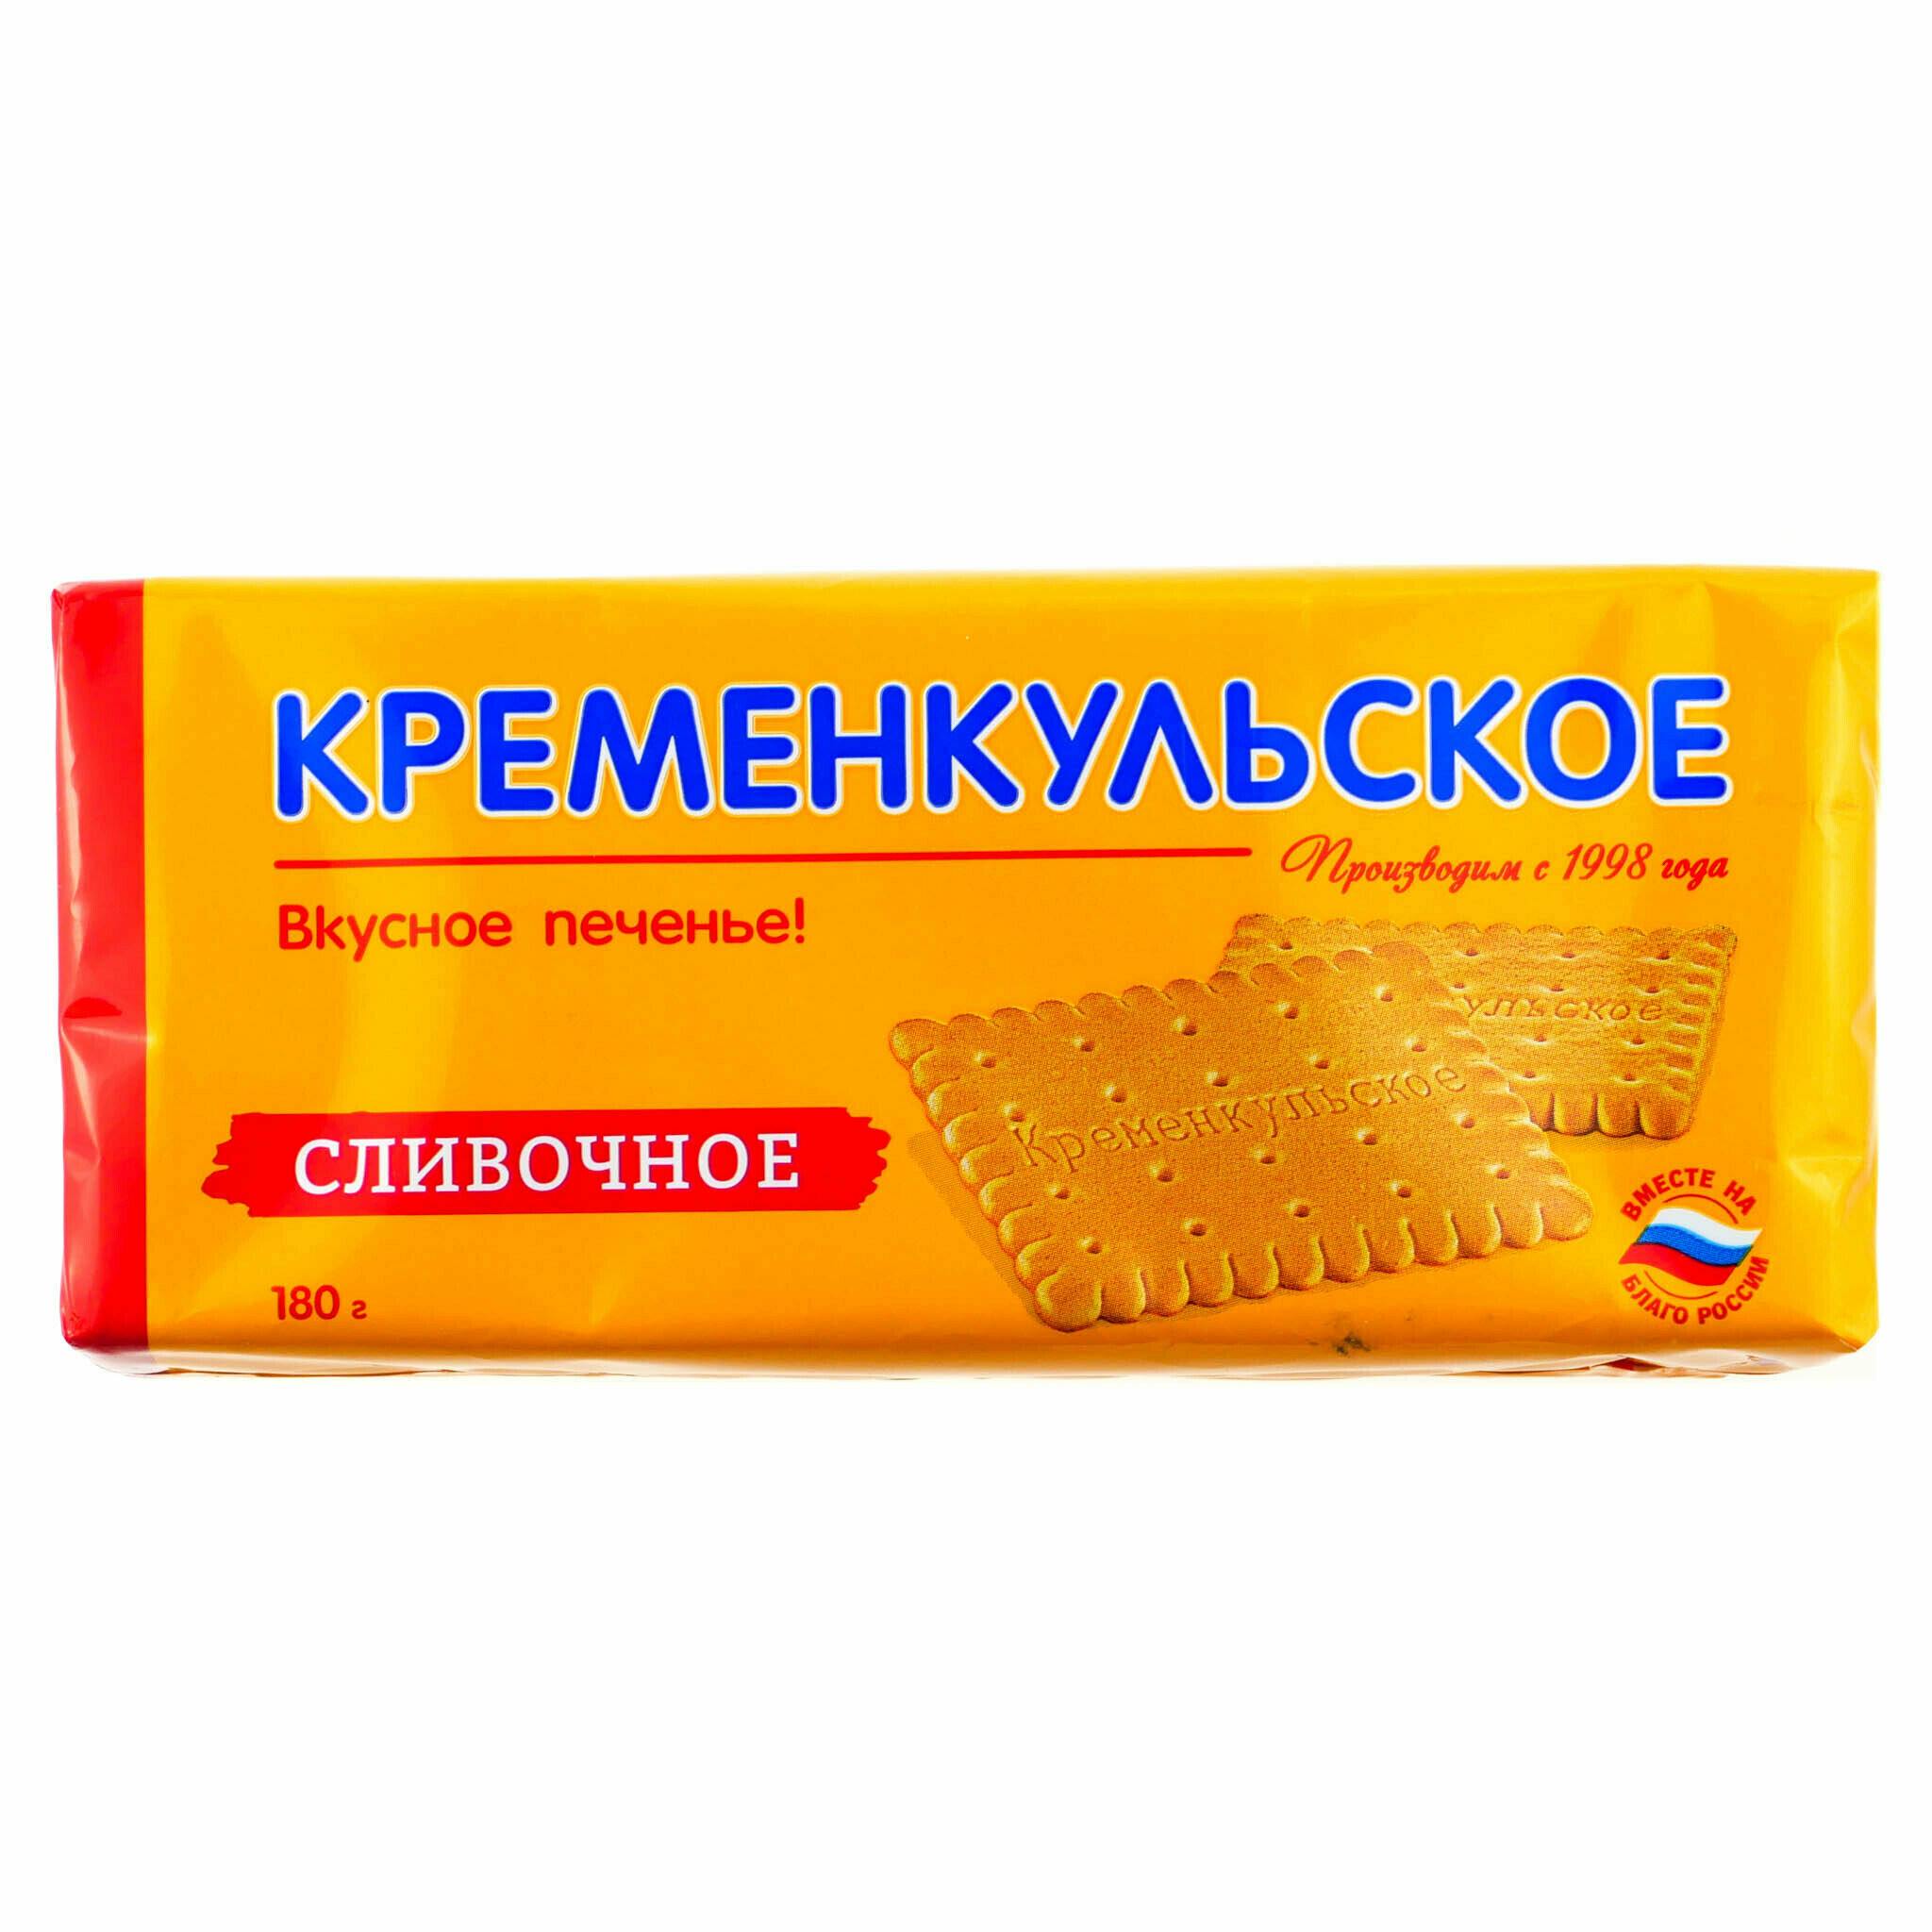 Печенье Кременкульское сливочное, 180 гр*6шт